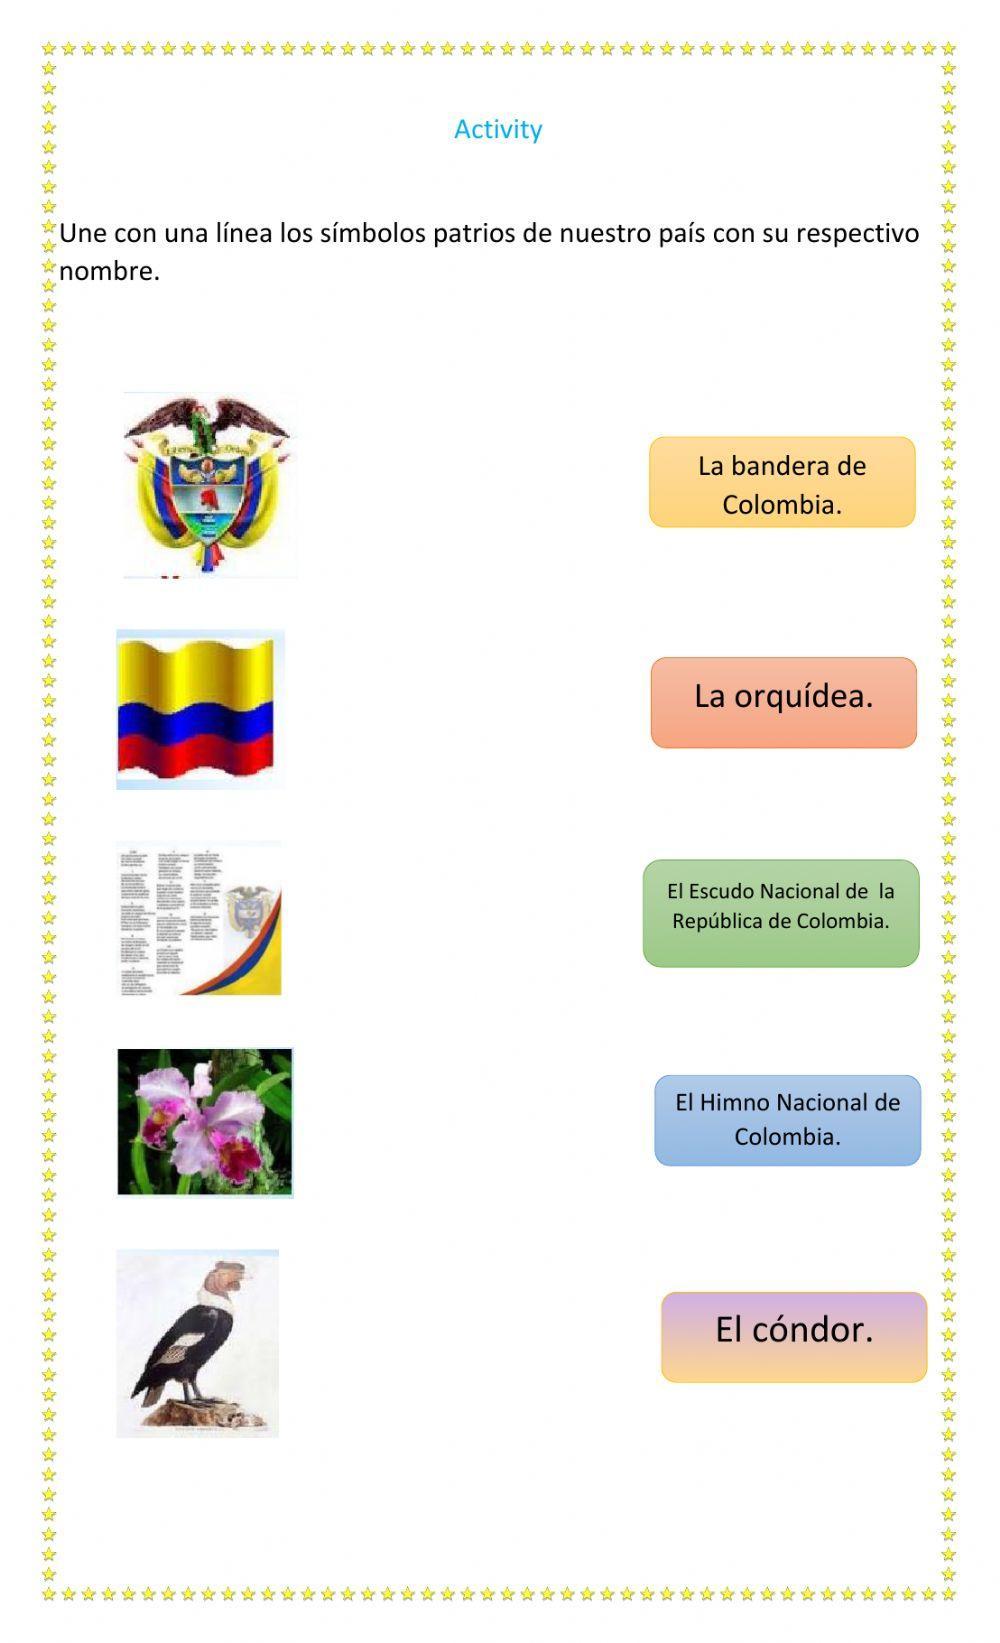 Los símbolos patrios de Colombia